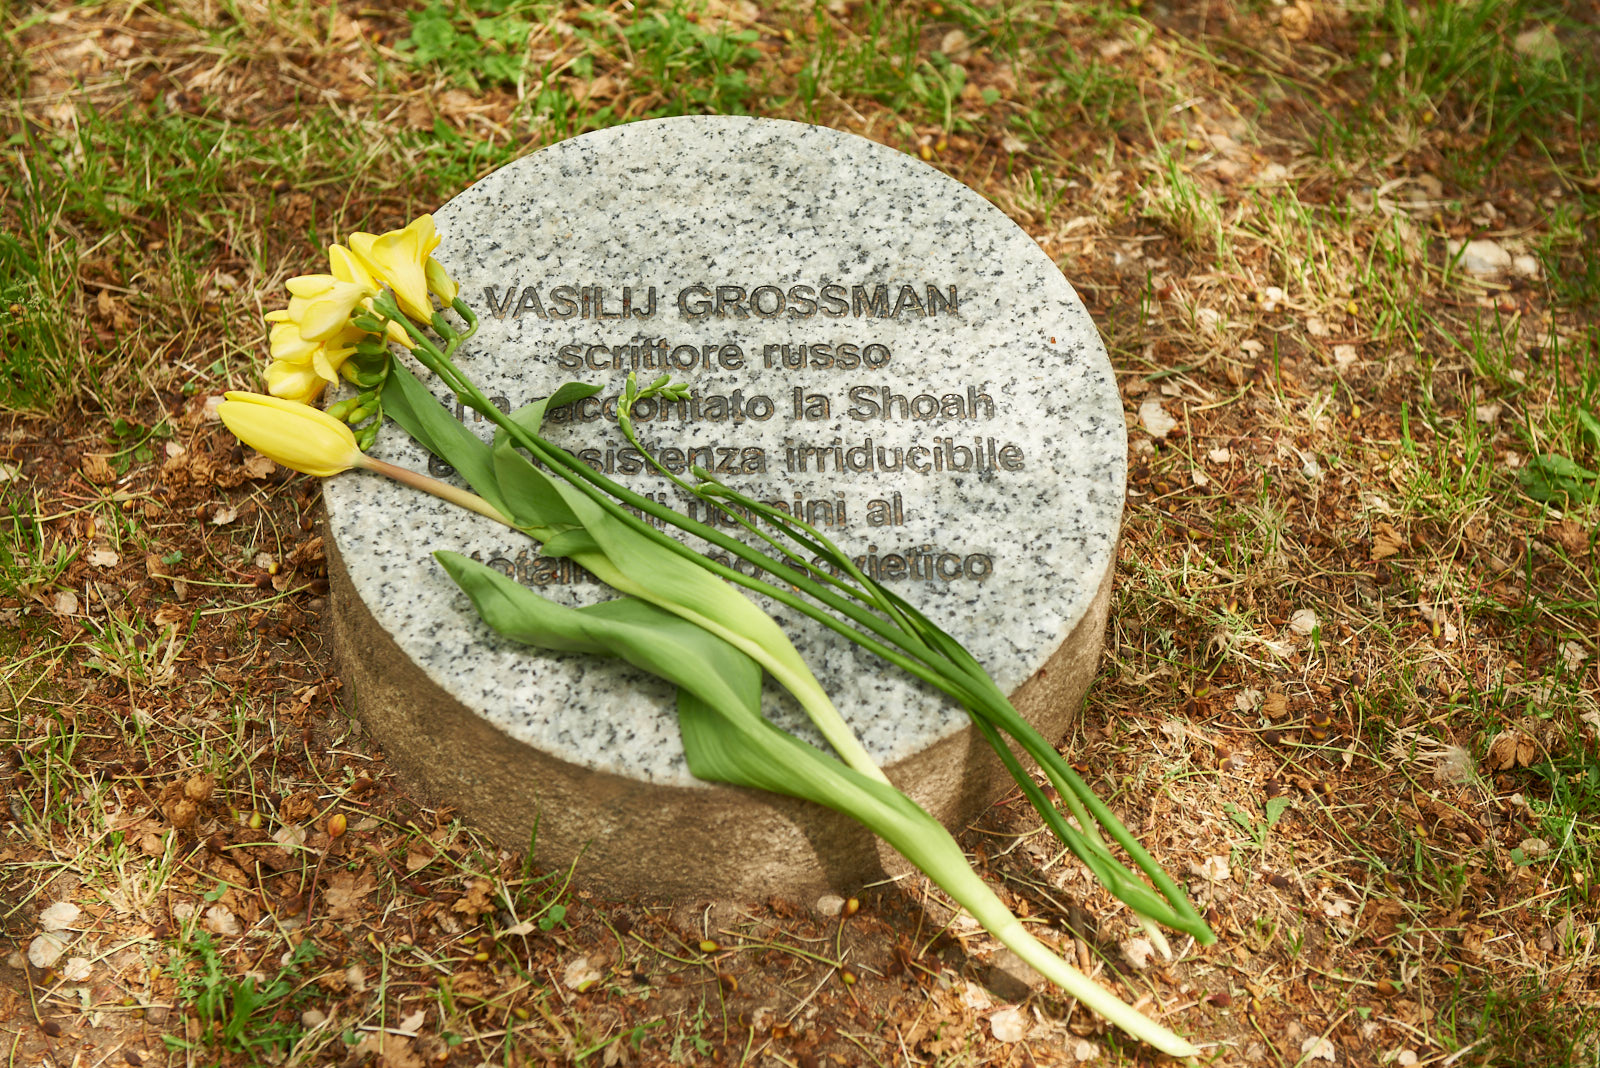  Il fiore giallo riposto presso il cippo dedicato a Vasilij Grossman